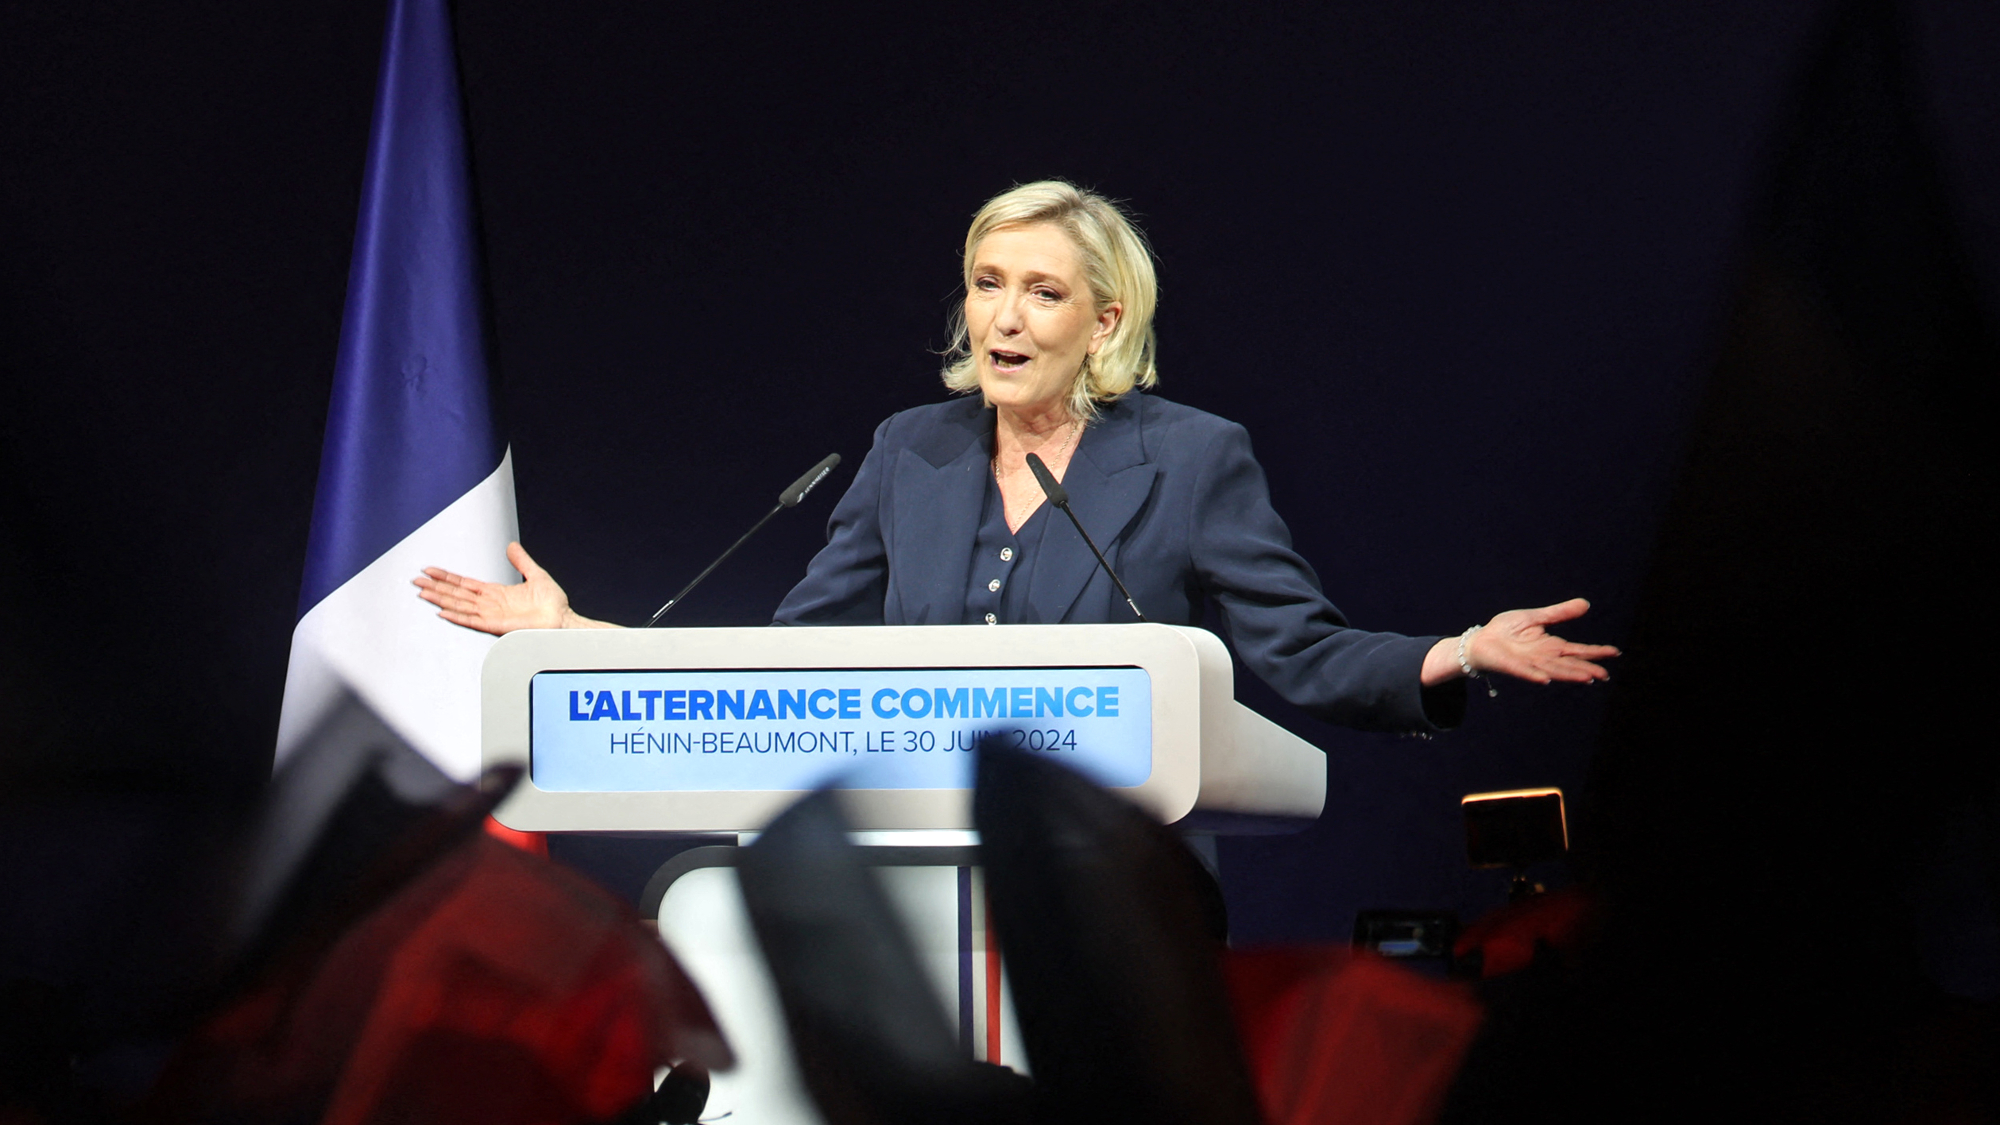 اليمين المتطرف يفوز بالجولة الأولى من الانتخابات الفرنسية